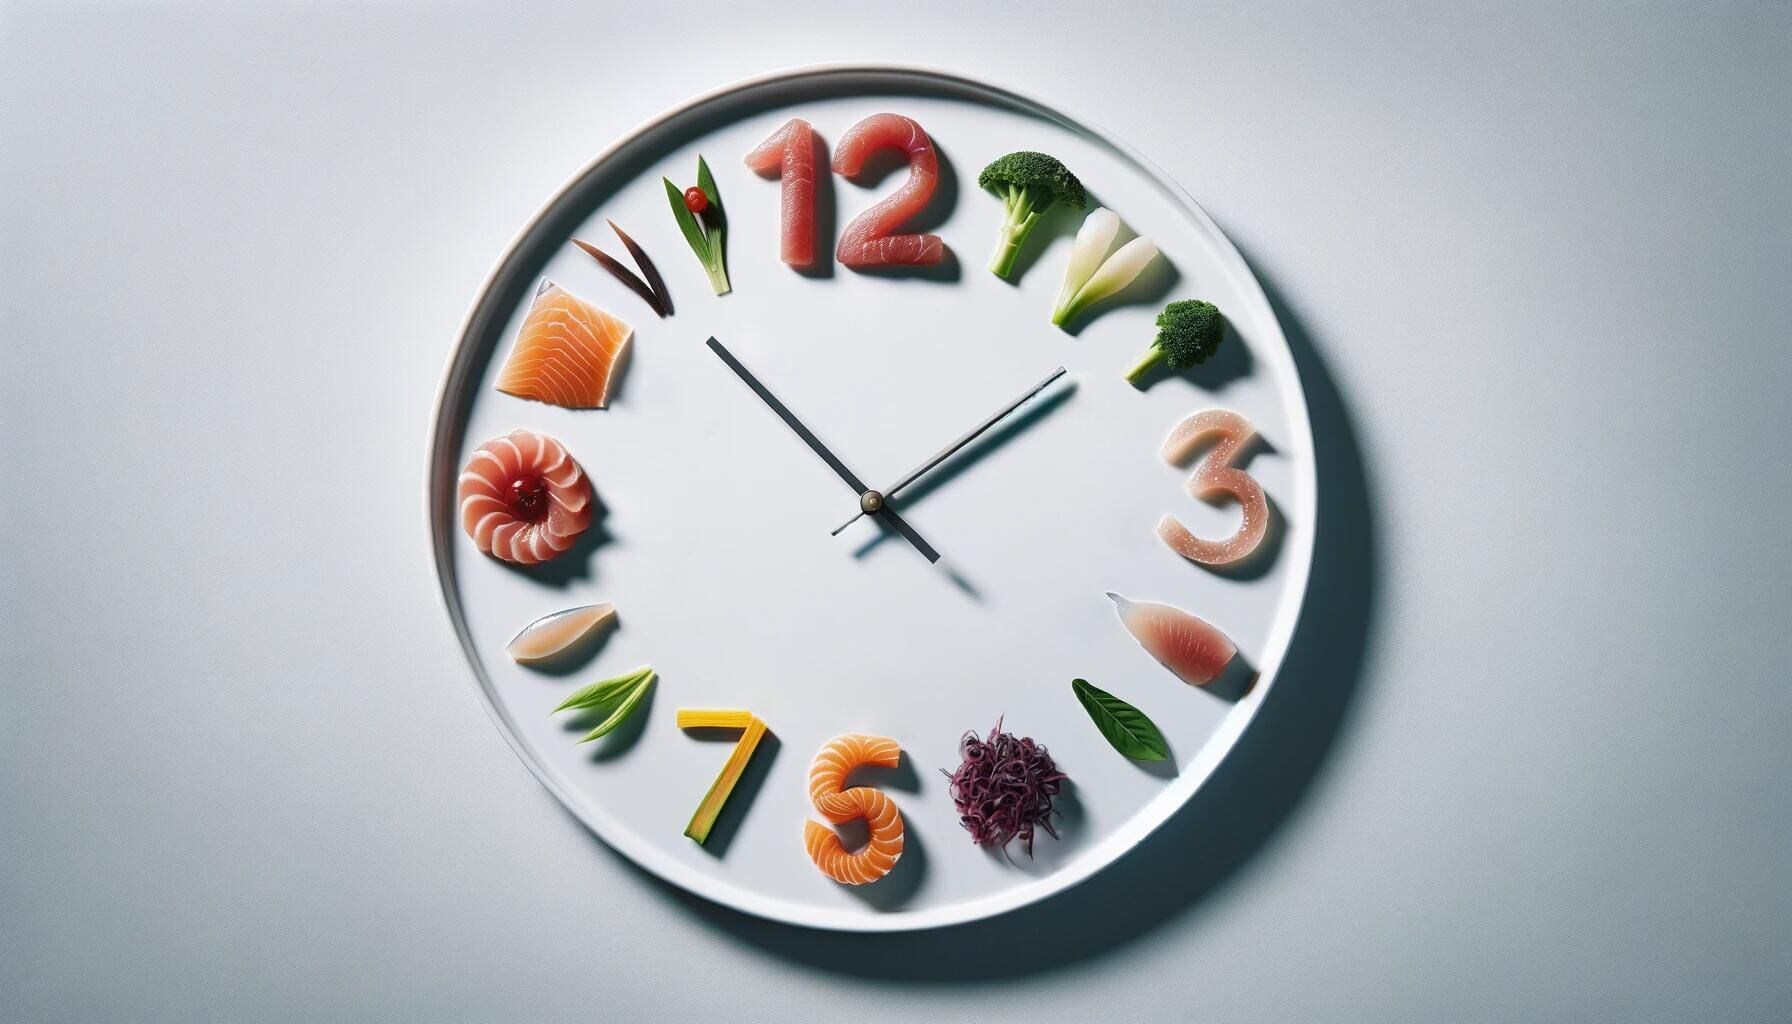 Imagen que ilustra la diversidad alimentaria de la dieta intermitente, promoviendo la salud con opciones nutritivas como vegetales, frutas, carne y pescado. (Imagen Ilustrativa Infobae)